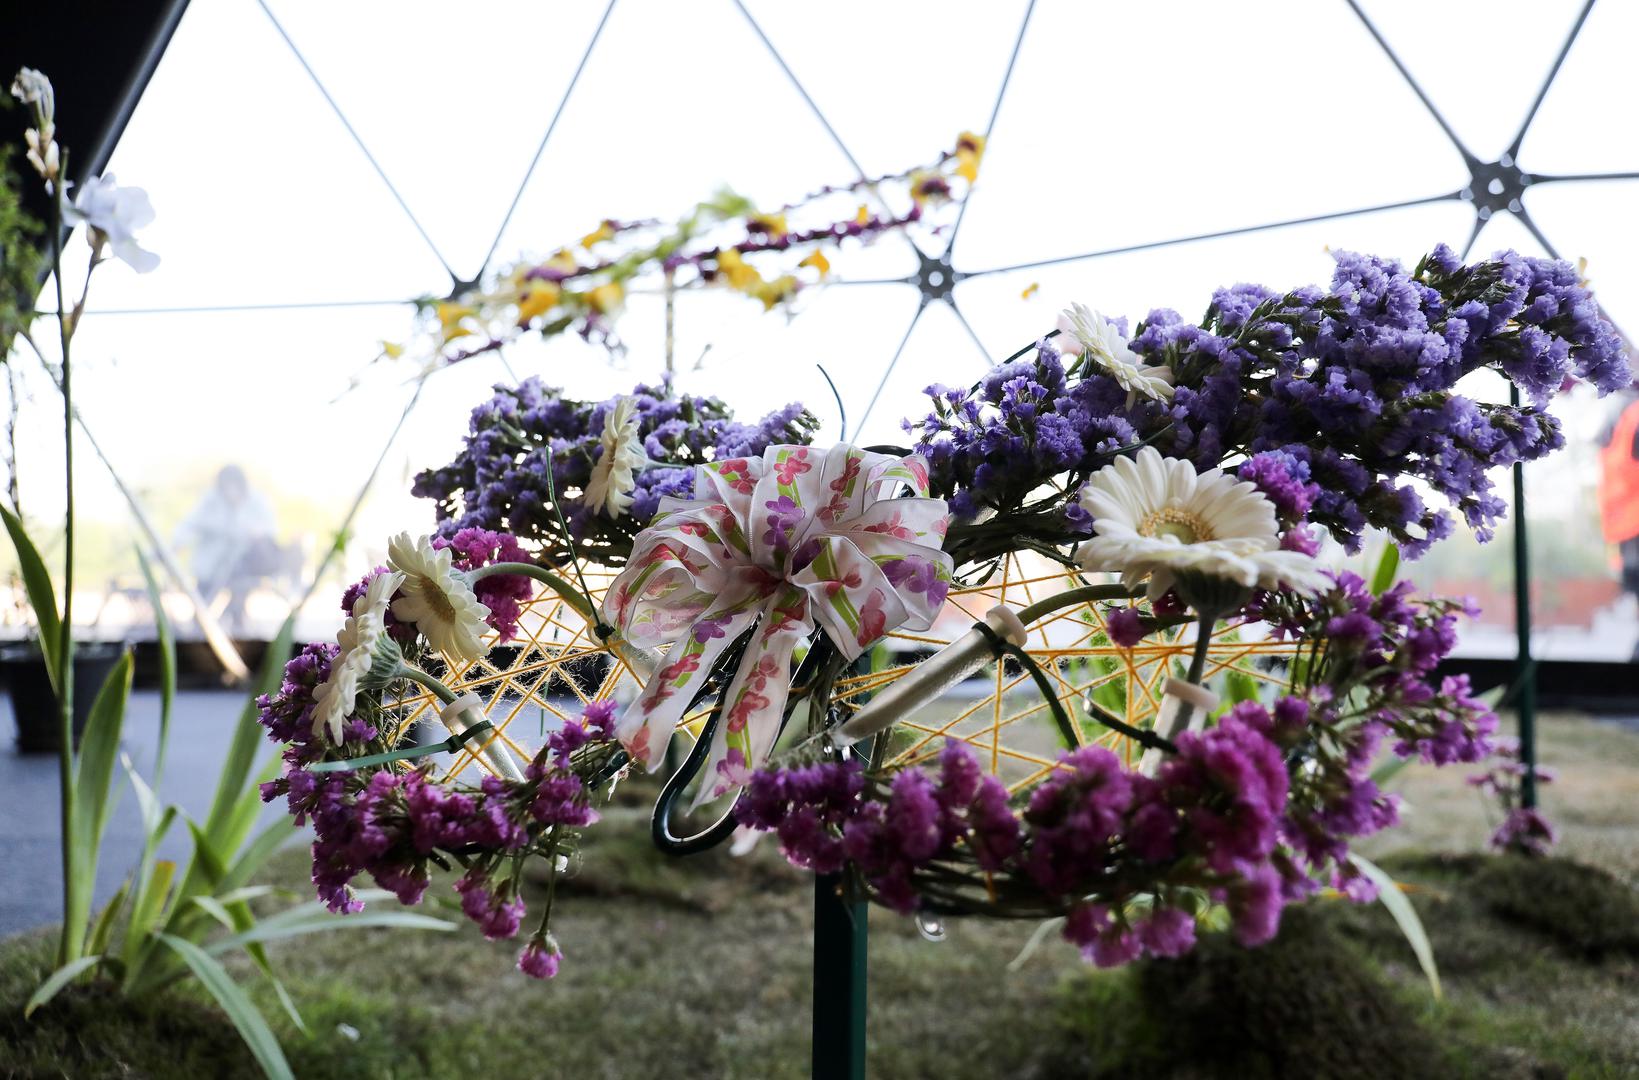 Sezonsko cvijeće u najpopularnijoj boji krasi ovu genijalnu cvjetnu instalaciju